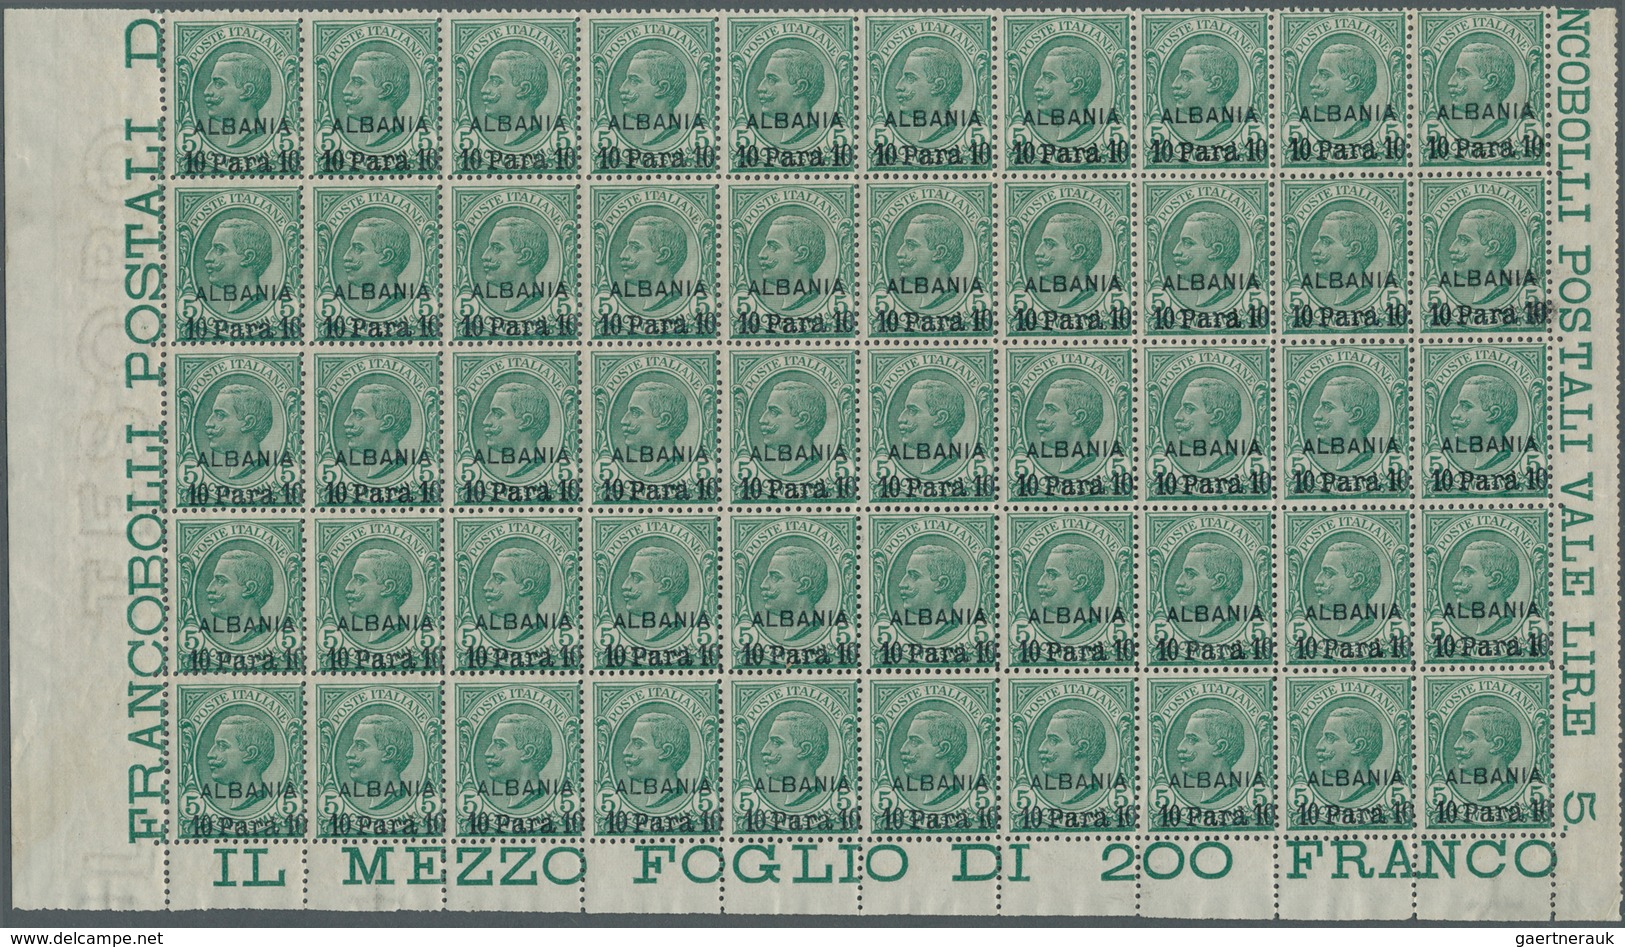 Italienische Post In Albanien: 1907, Victor Emanuel III. 5c. Green With Opt. ‚ALBANIA / 10 Para 10‘ - Albania